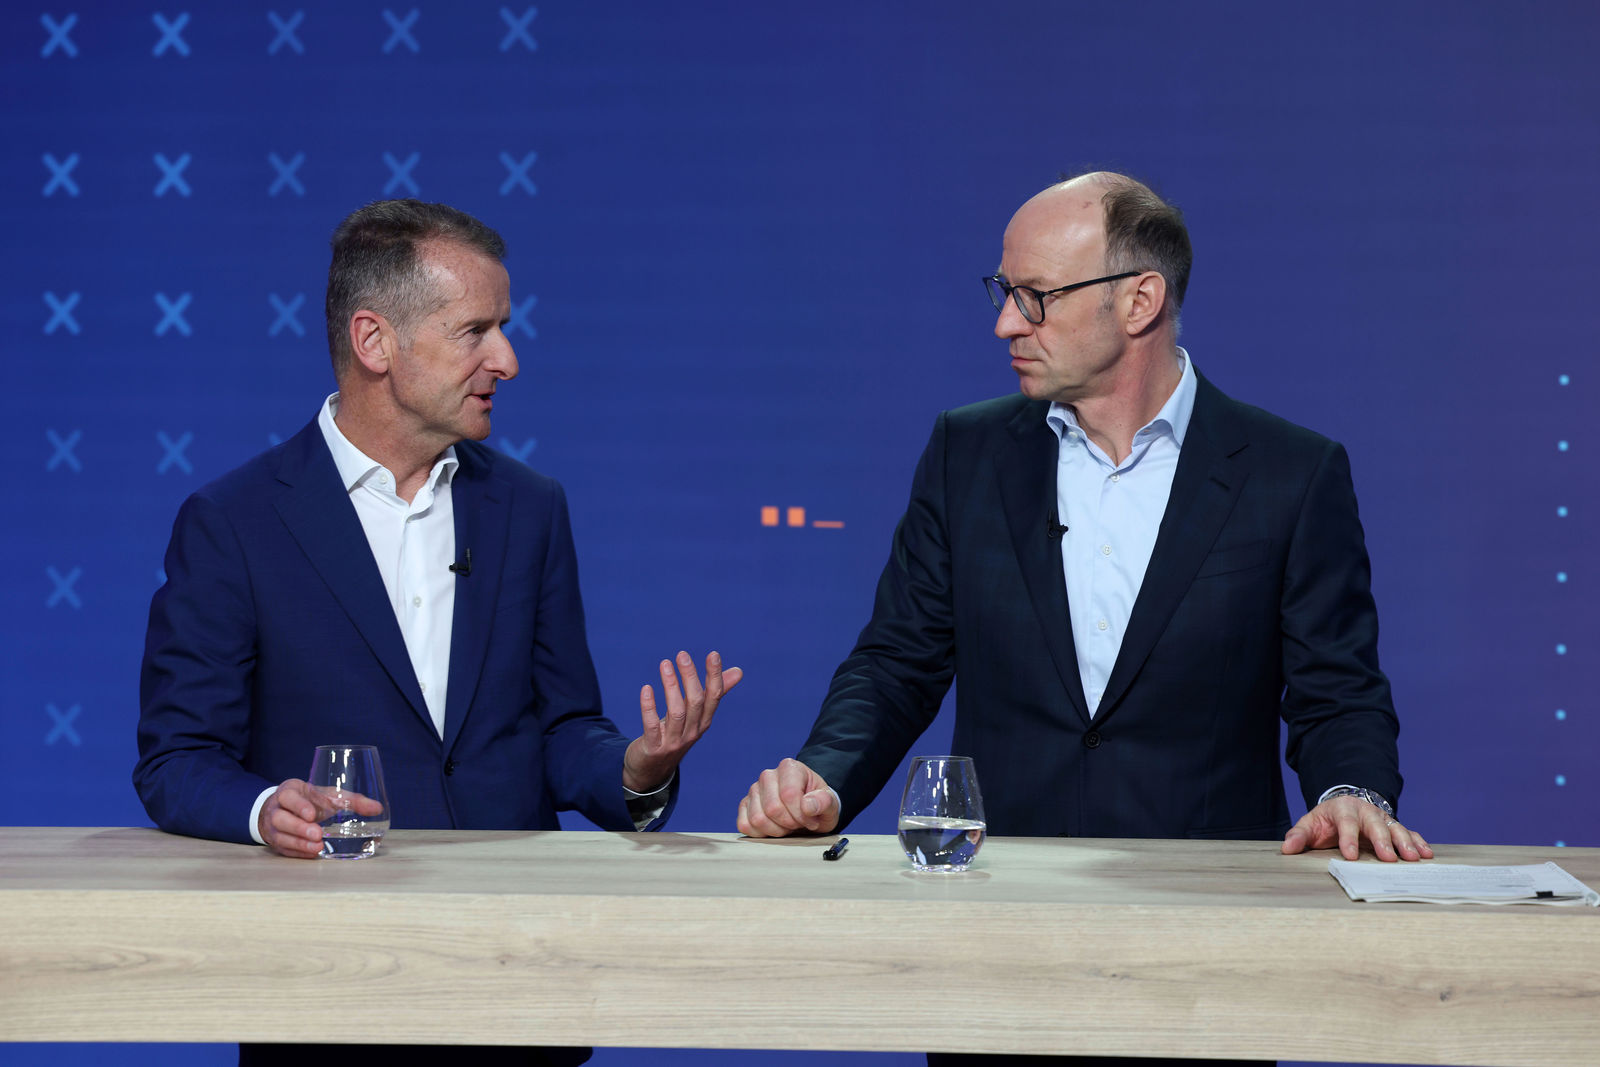 Jahrespressekonferenz der Volkswagen Group 2022